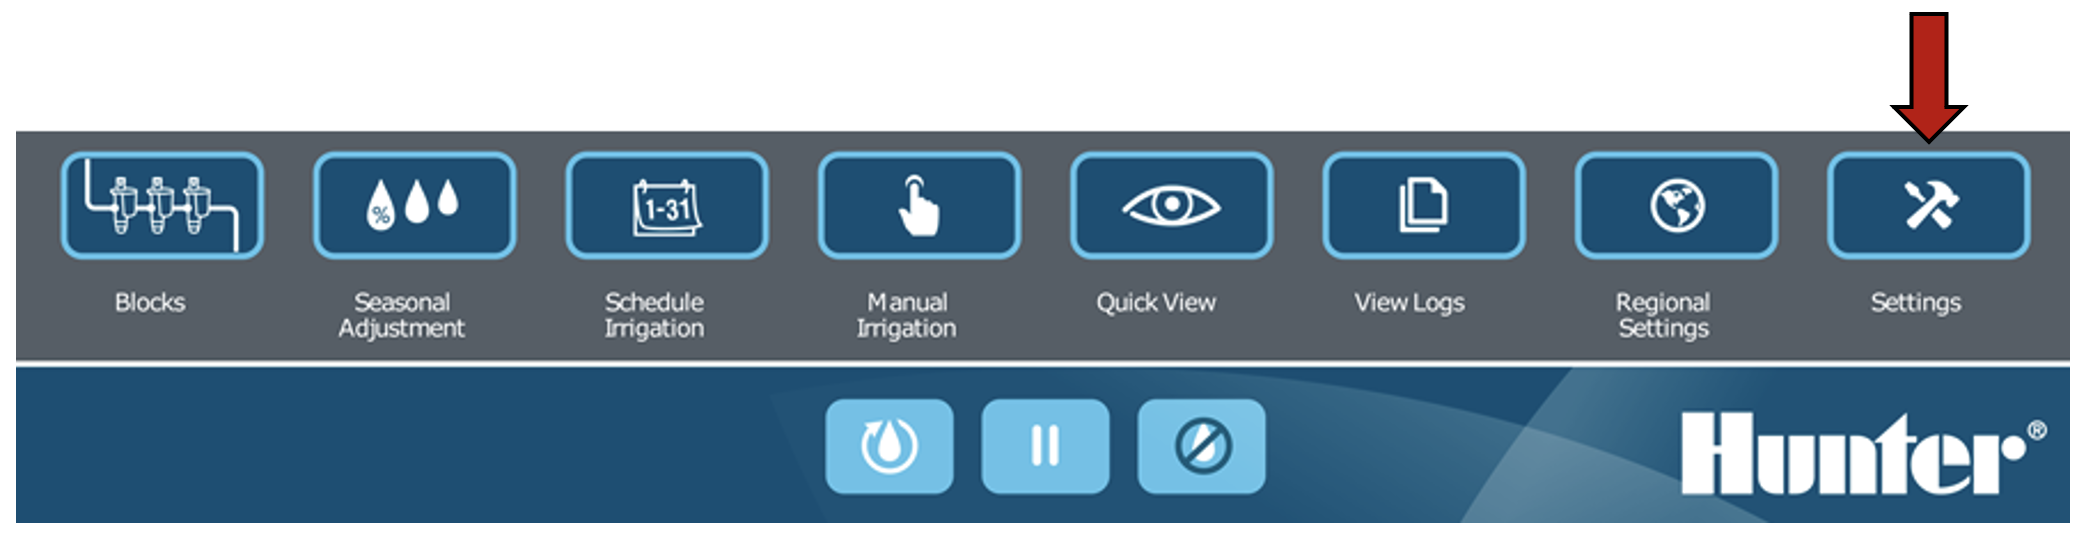 Immagine dell'interfaccia che mostra il pulsante Impostazioni selezionato.